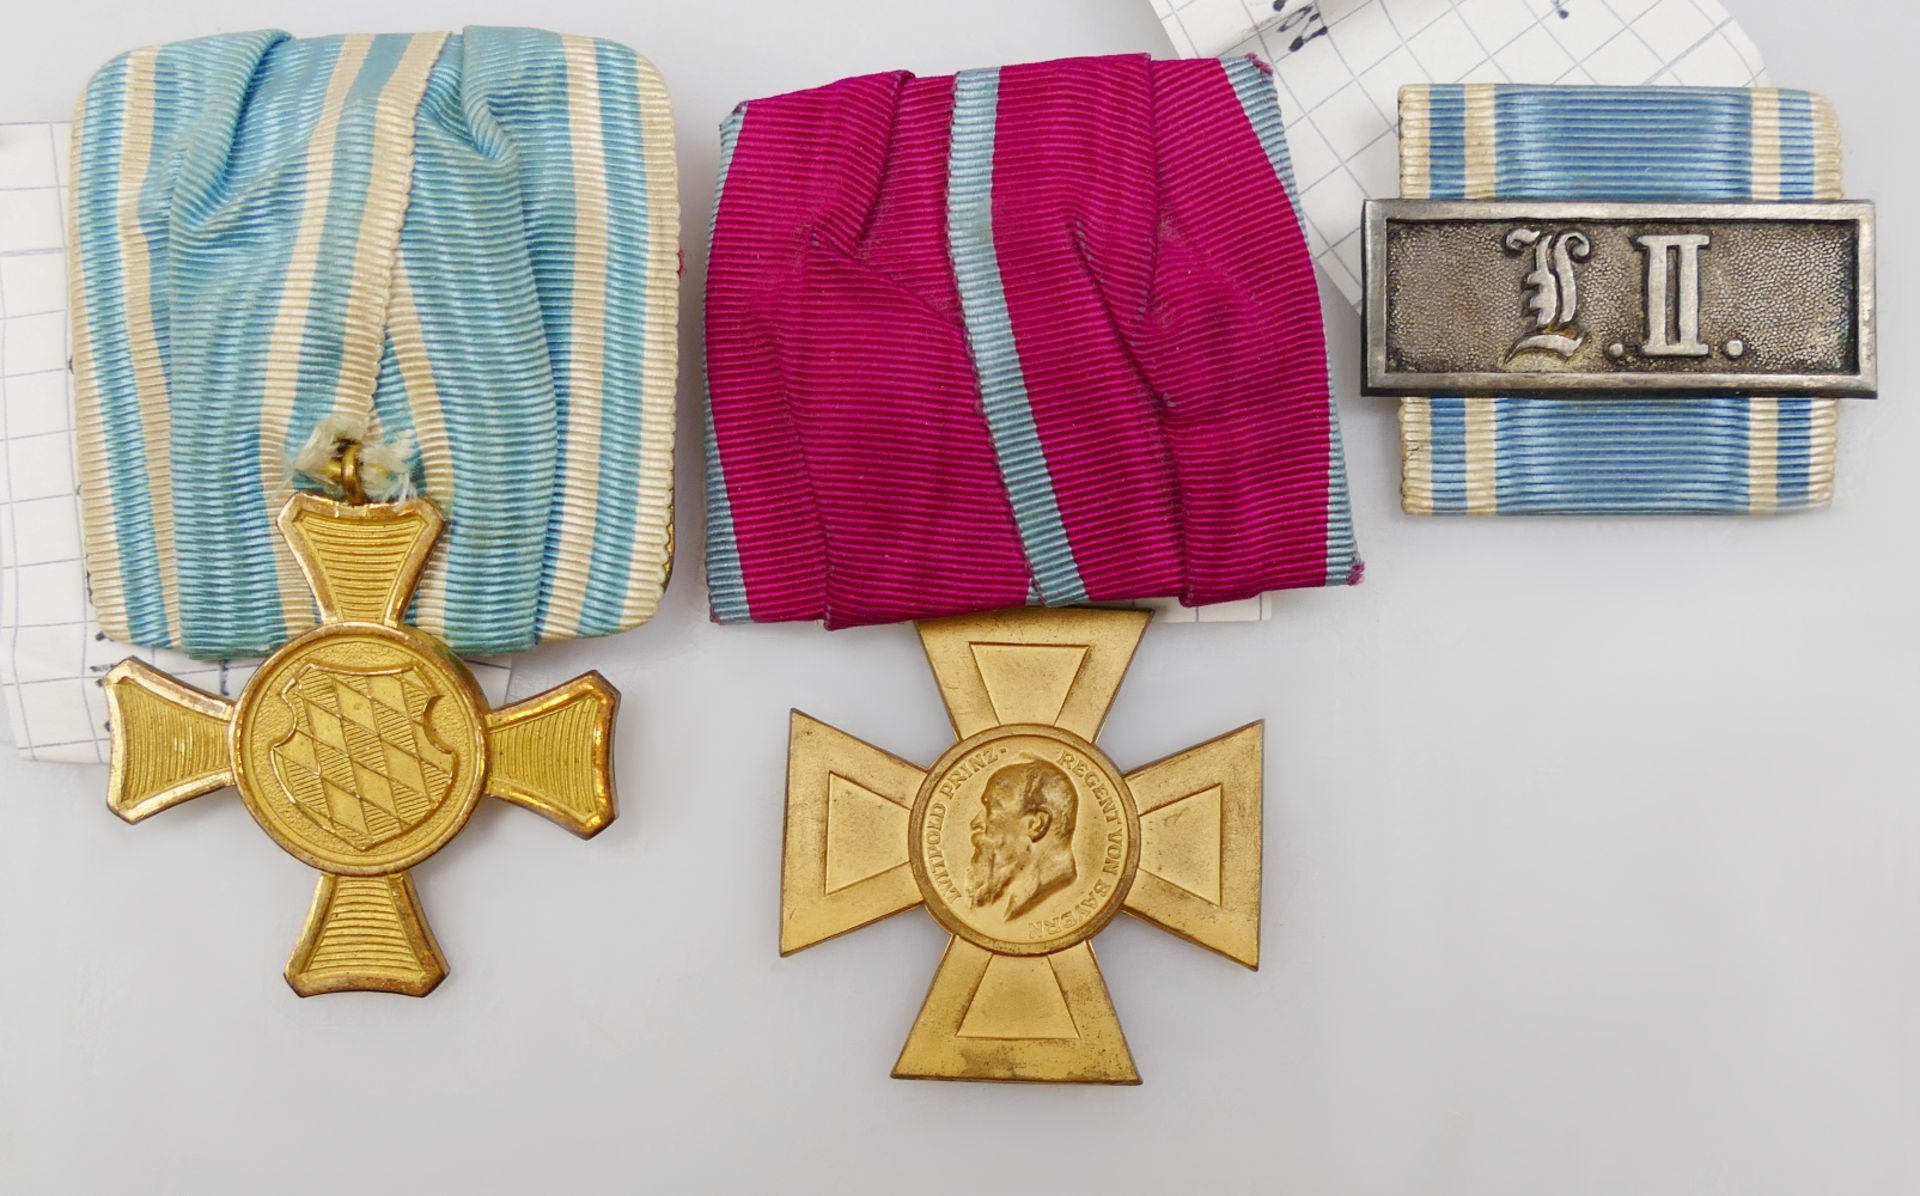 3 bayerische Dienstauszeichnungen: 1x für 15 Jahre beim Militär, 1x "Luitpoldkreuz für 40 Dienstjahr